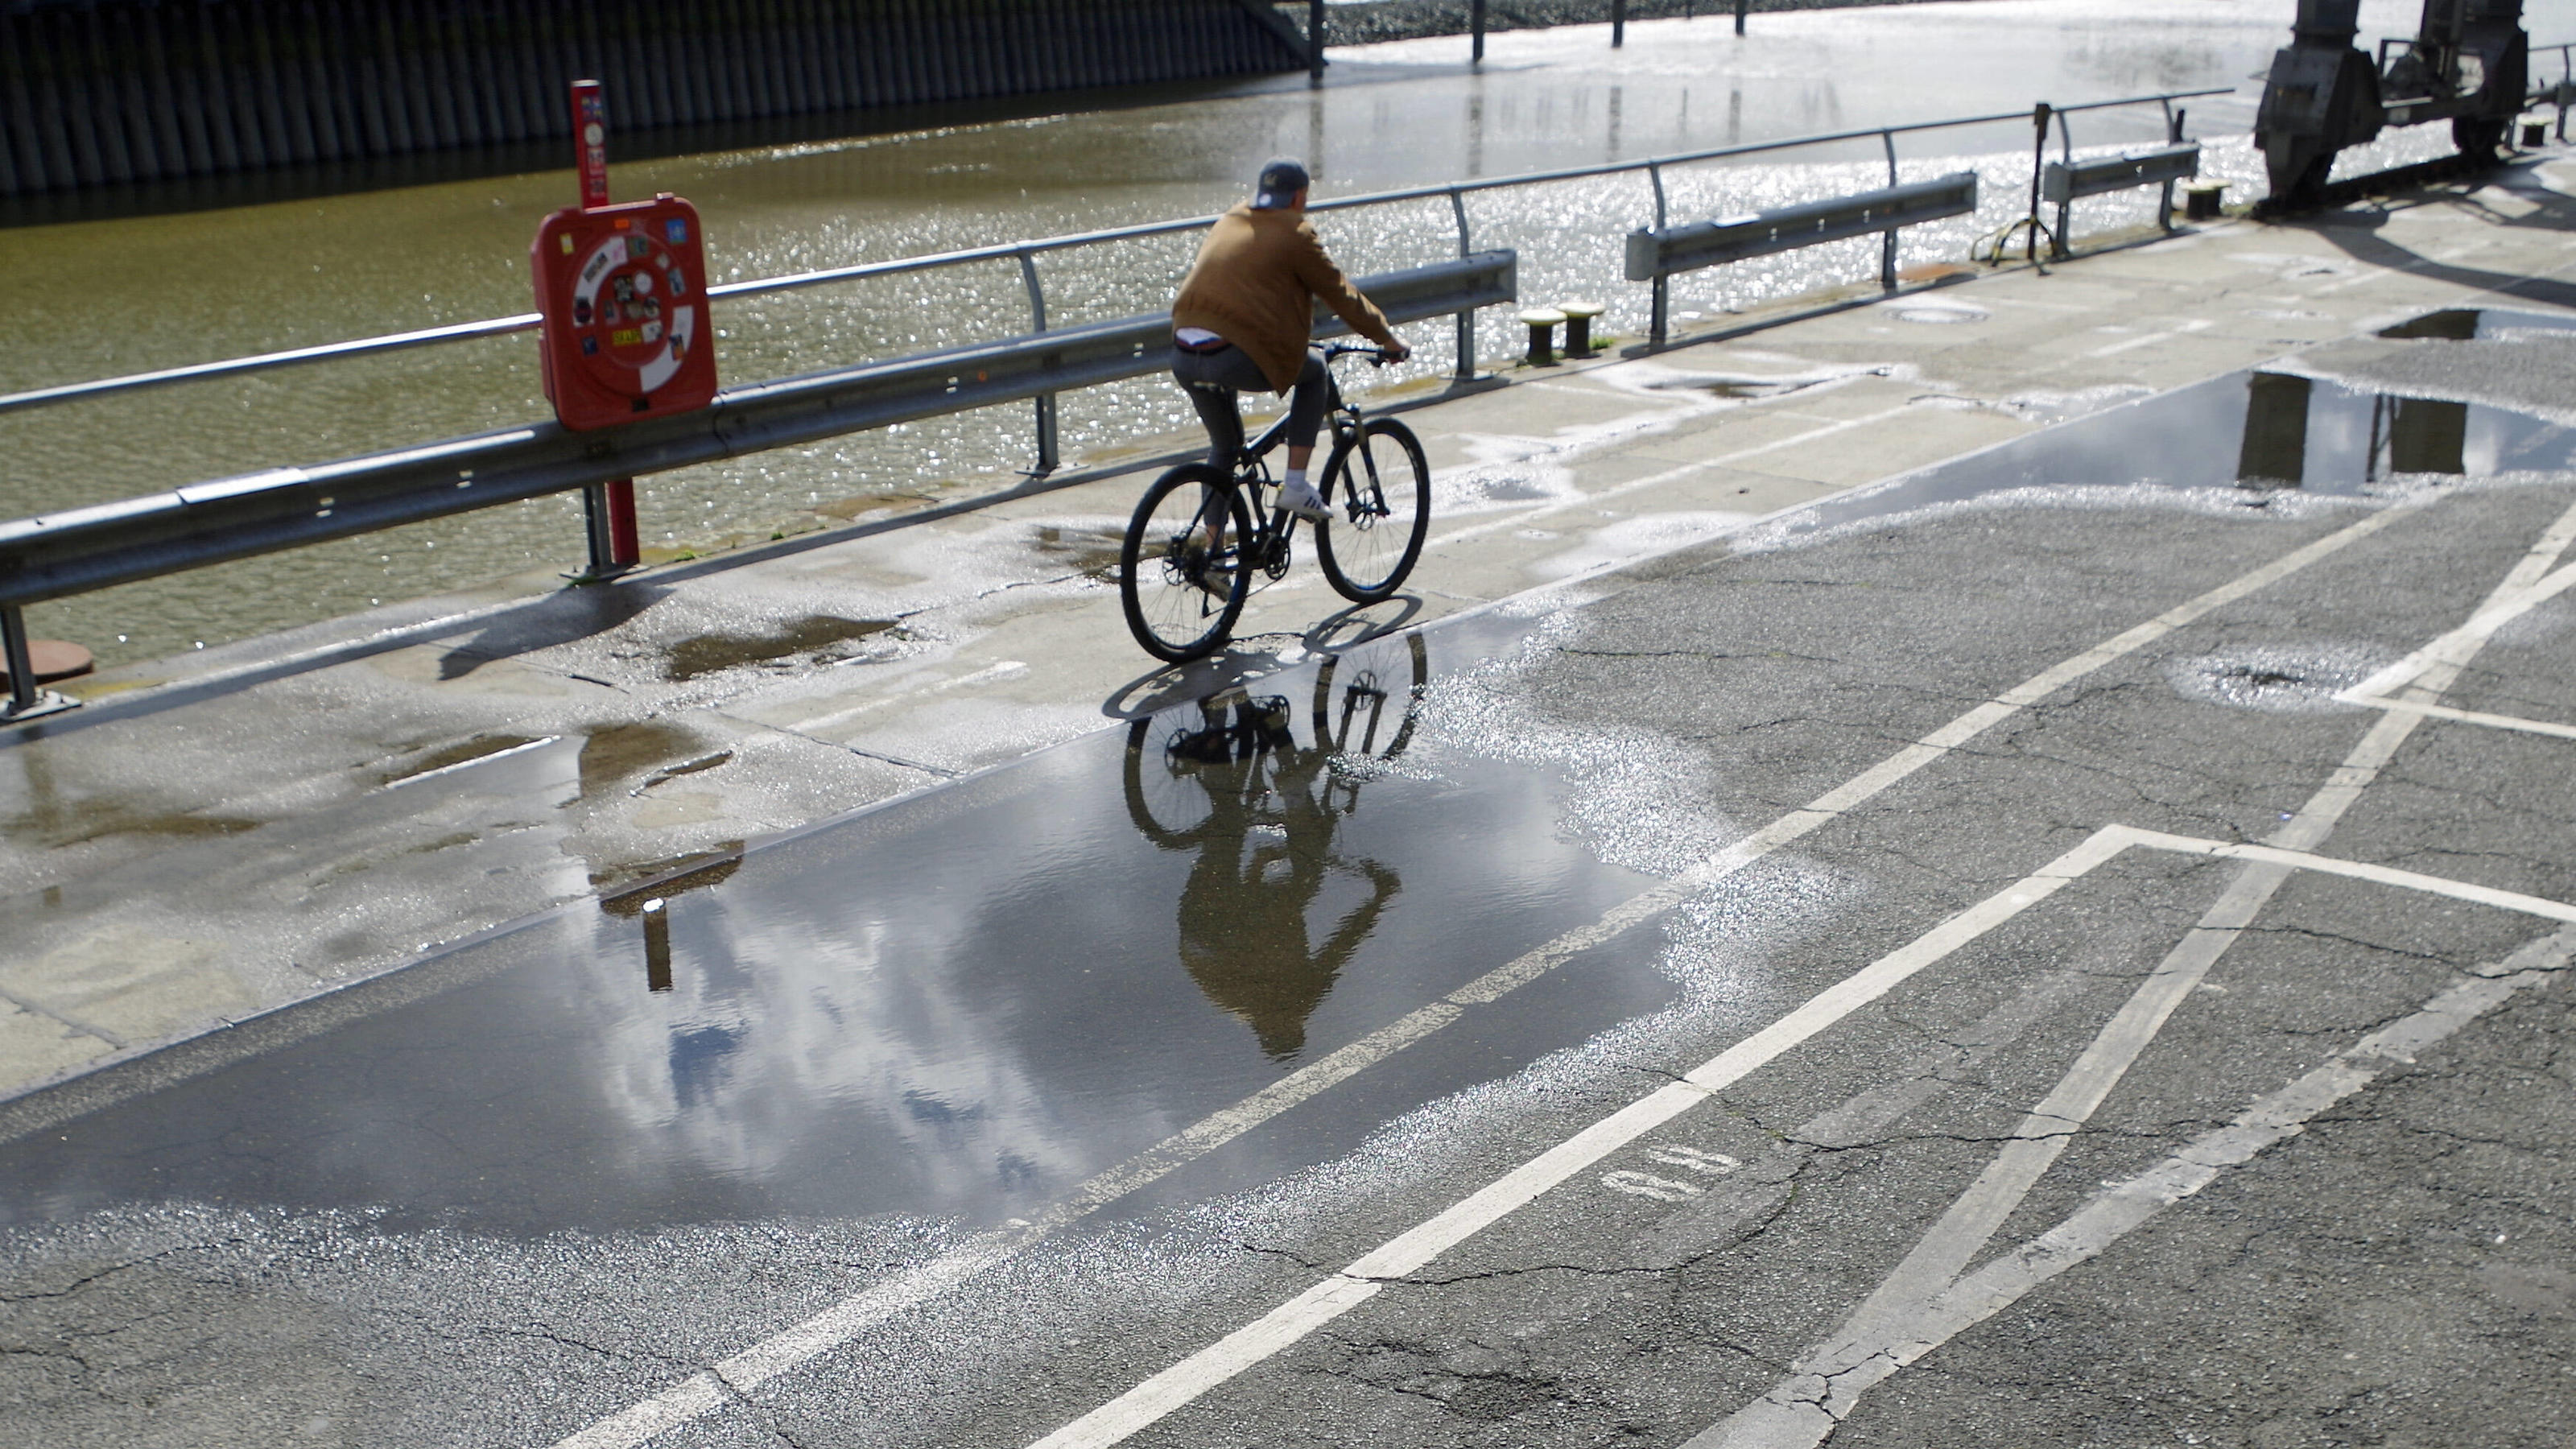  Feature: Wechselhaftes Wetter in Hamburg im Juli 2020. Ein Radfahrer spiegelt sich in einer Pfütze. *** Feature Changeable weather in Hamburg in July 2020 A cyclist is reflected in a puddle